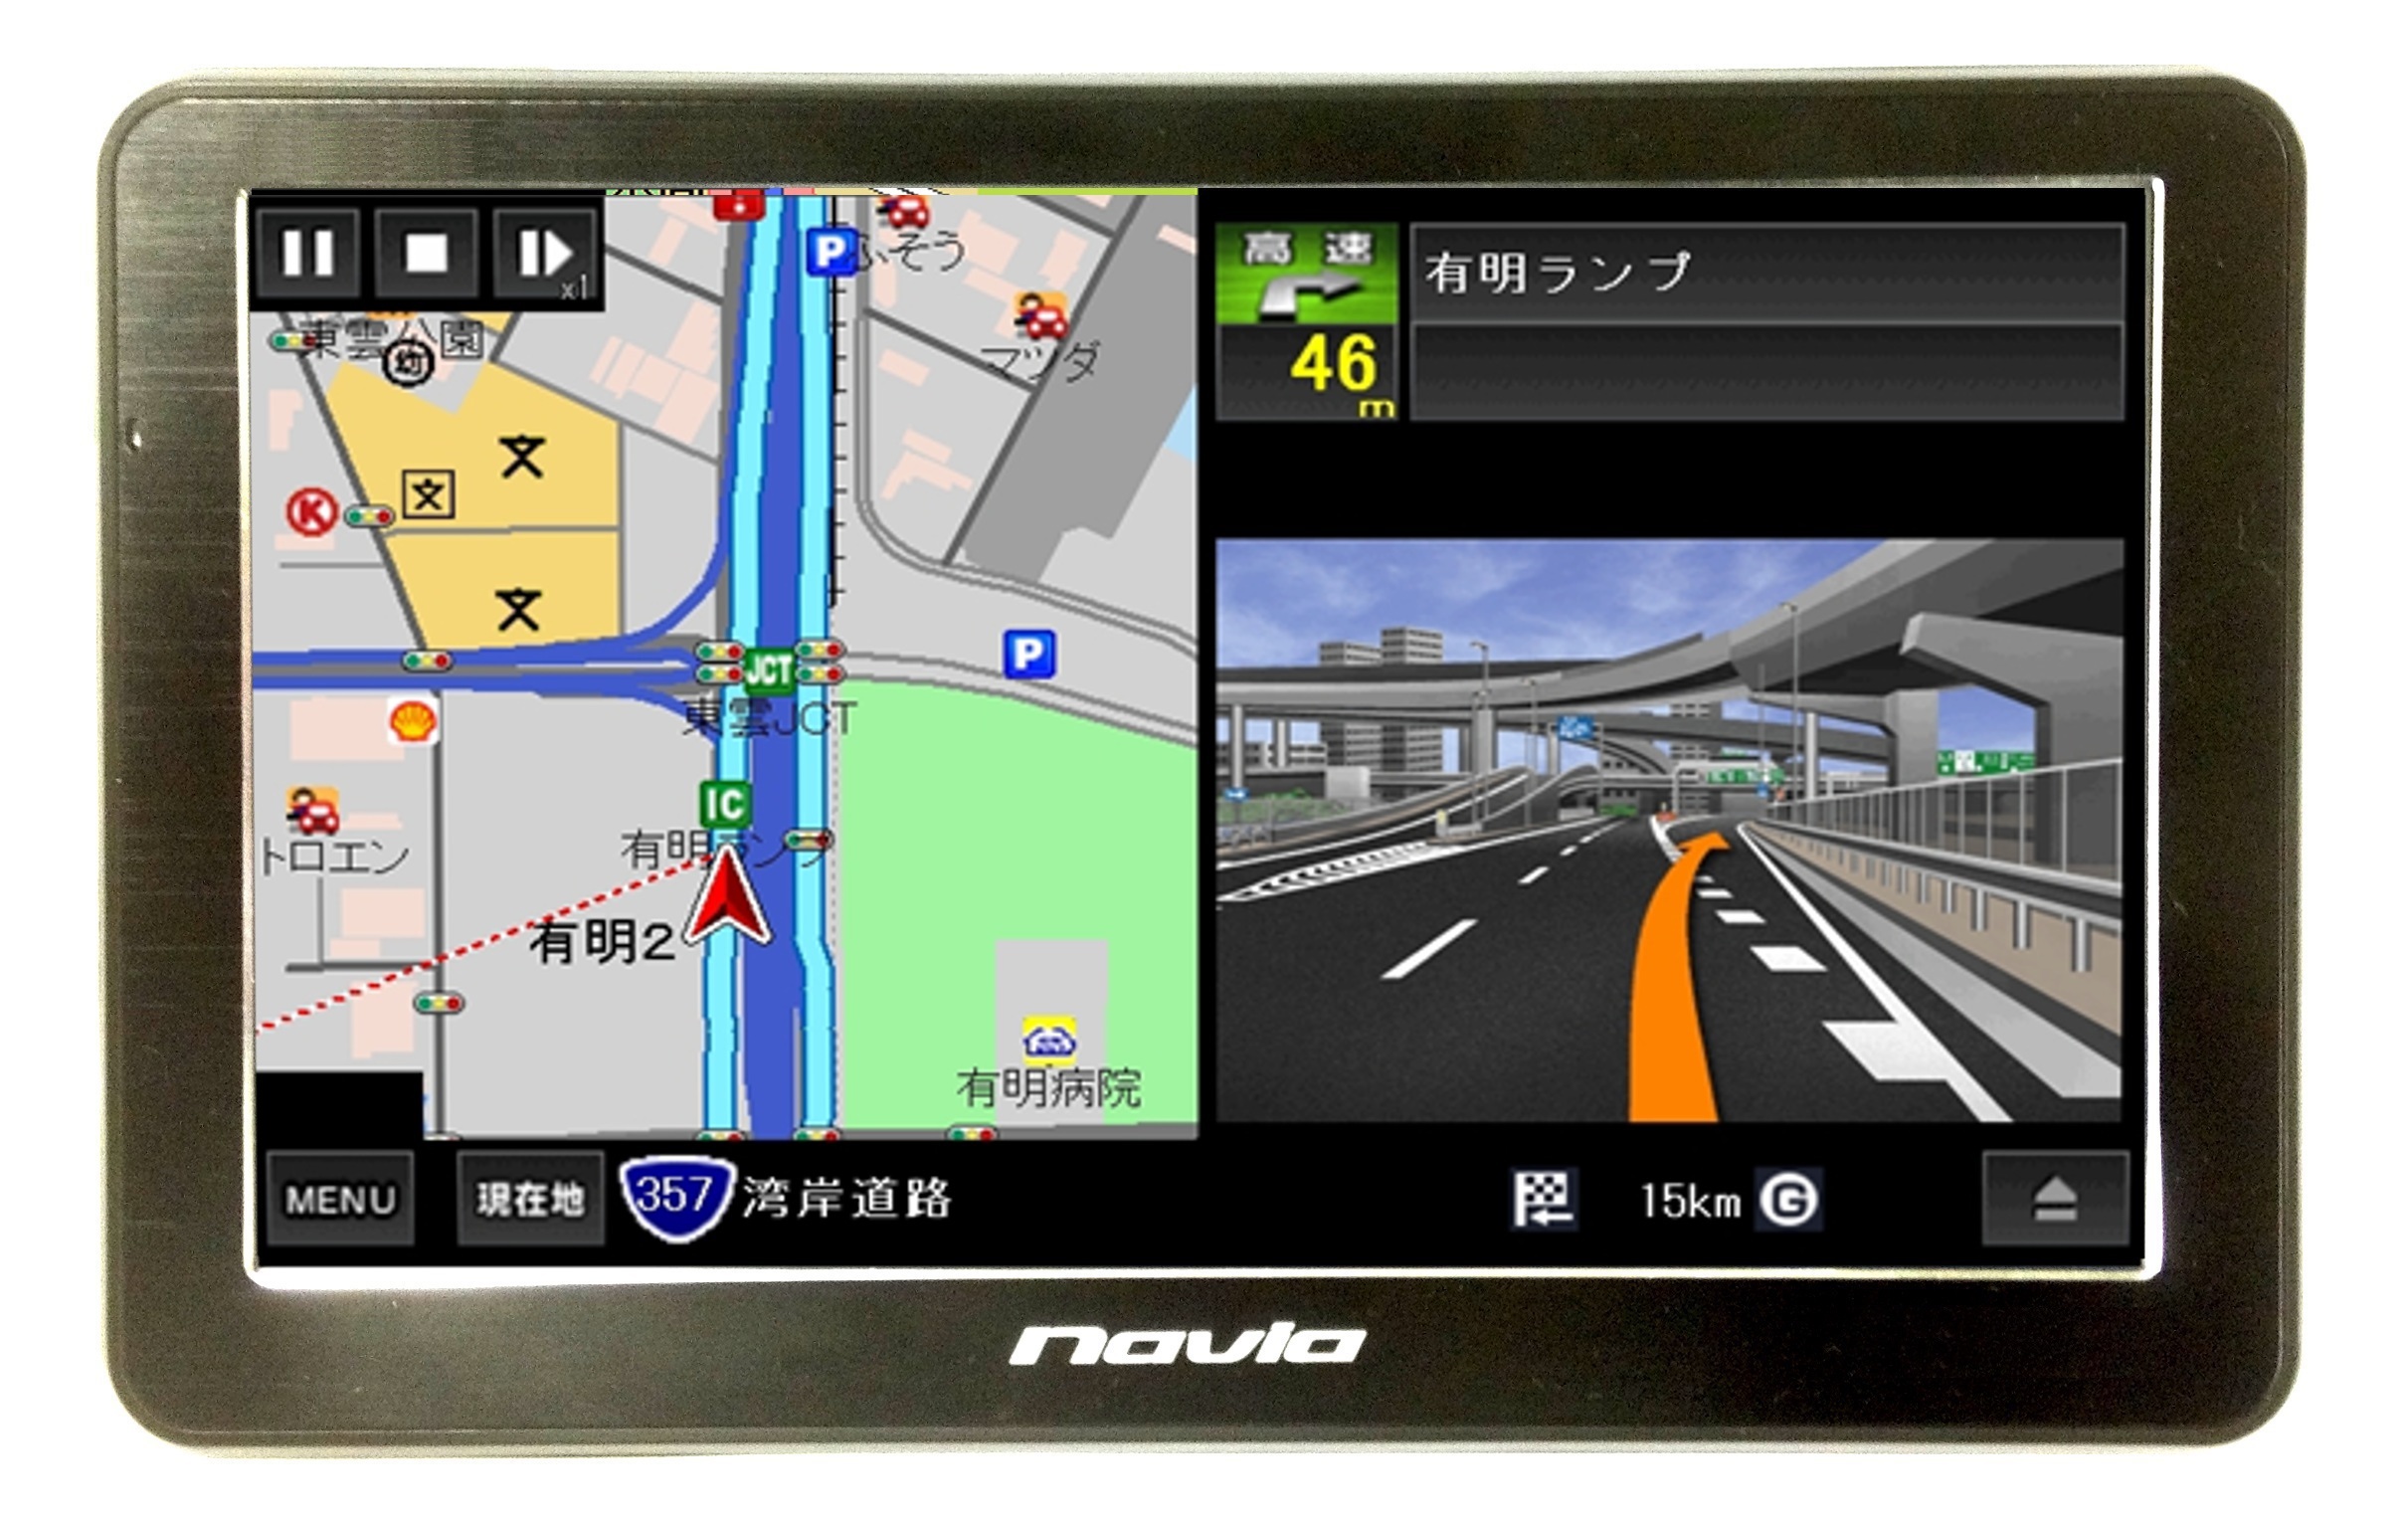 ナビゲーション GPS / KAIHOU